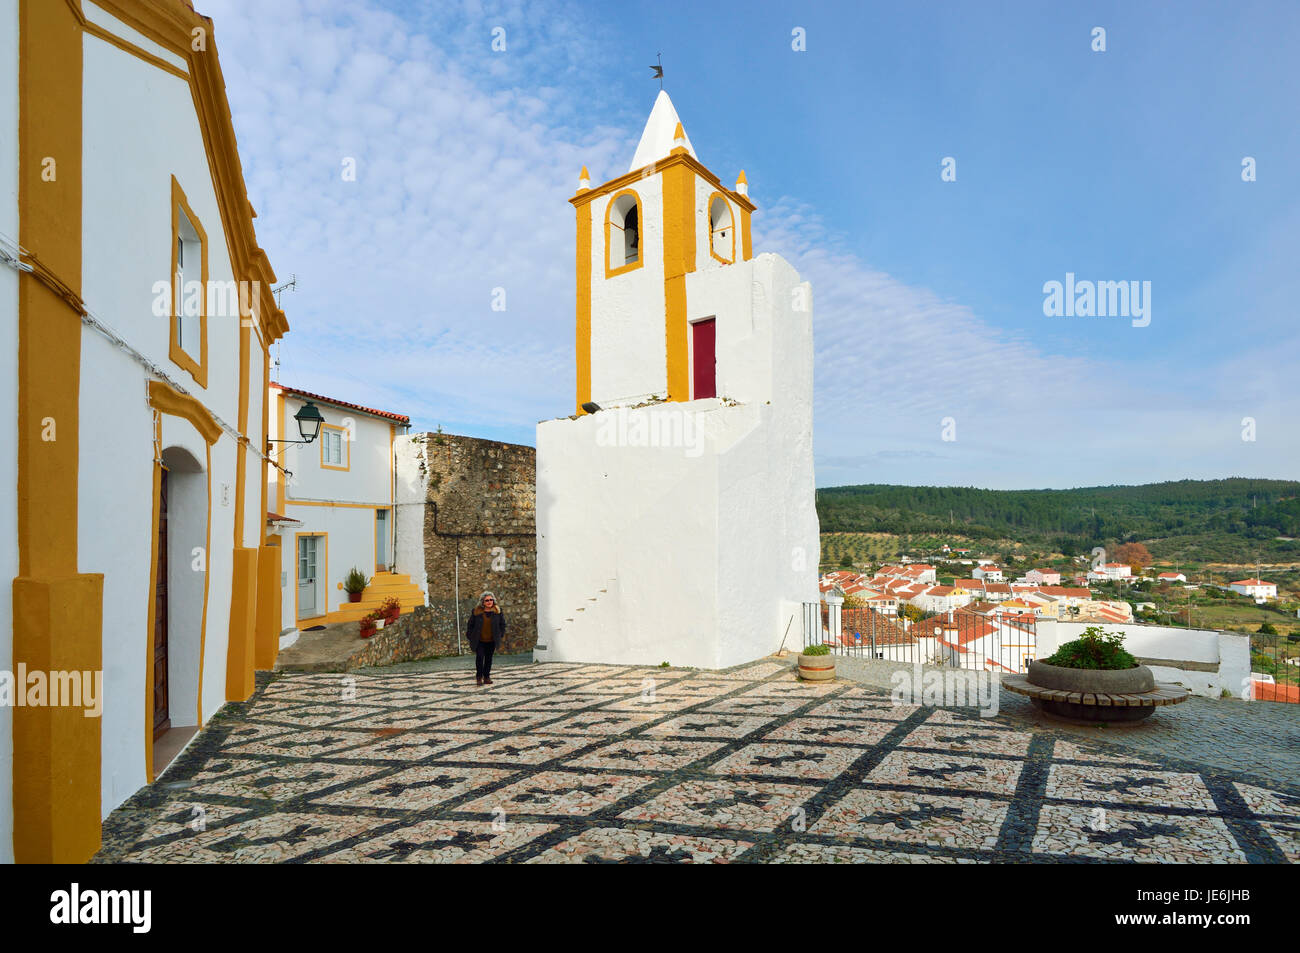 The historic village of Alegrete. Alentejo, Portugal Stock Photo